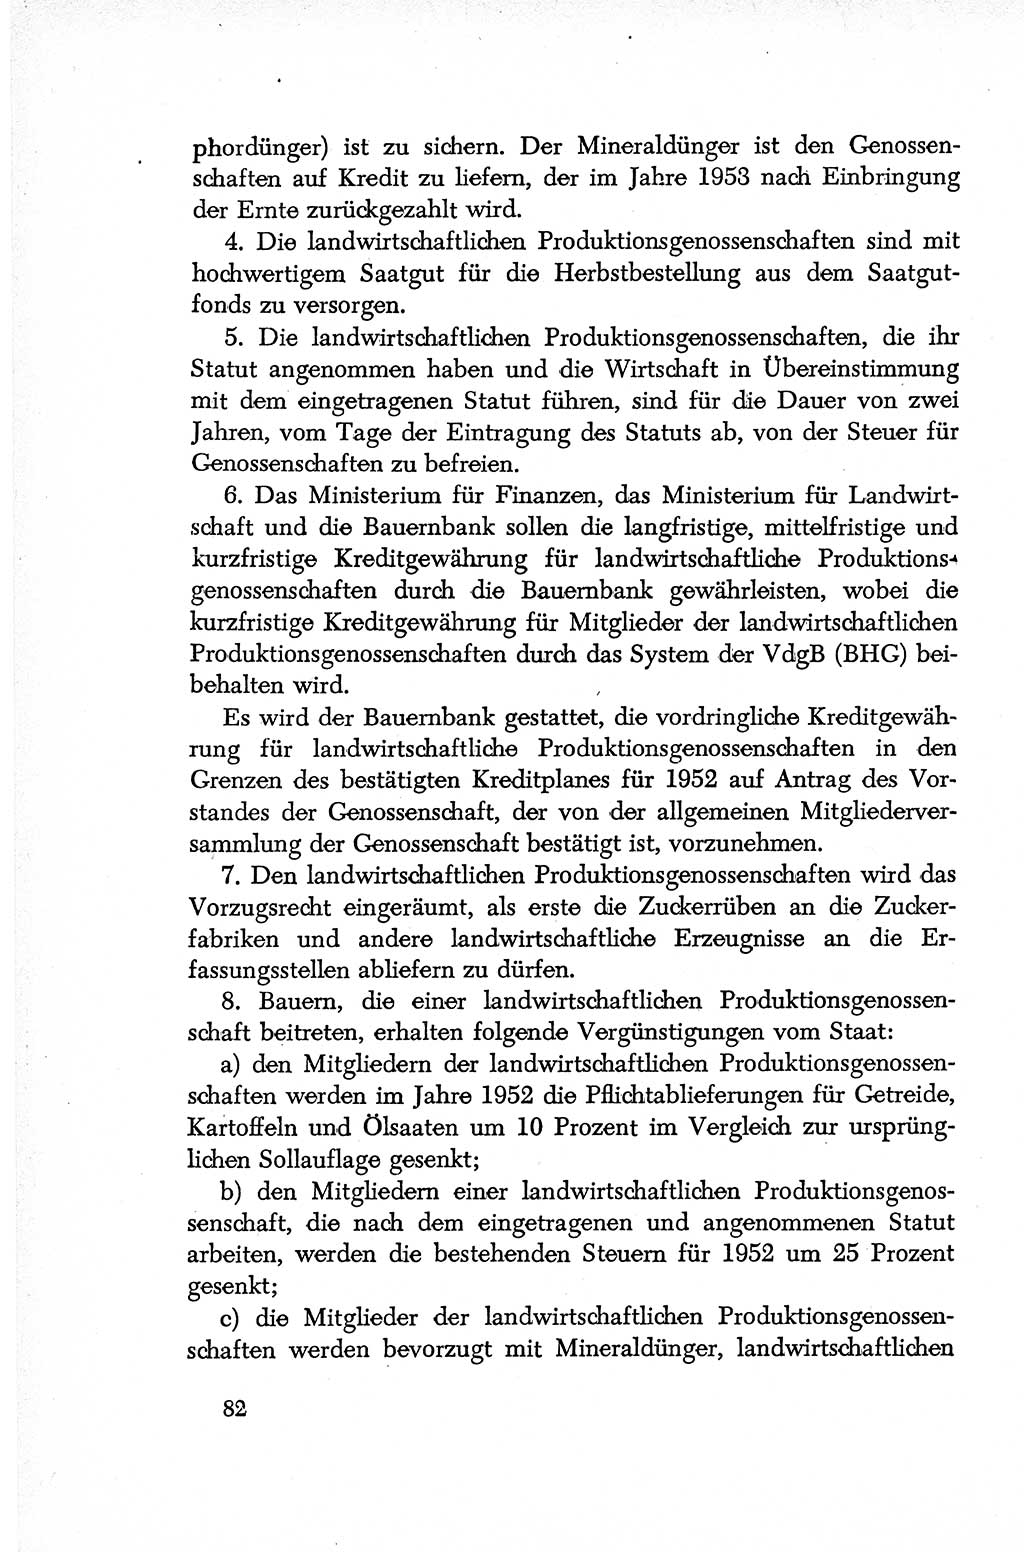 Dokumente der Sozialistischen Einheitspartei Deutschlands (SED) [Deutsche Demokratische Republik (DDR)] 1952-1953, Seite 82 (Dok. SED DDR 1952-1953, S. 82)